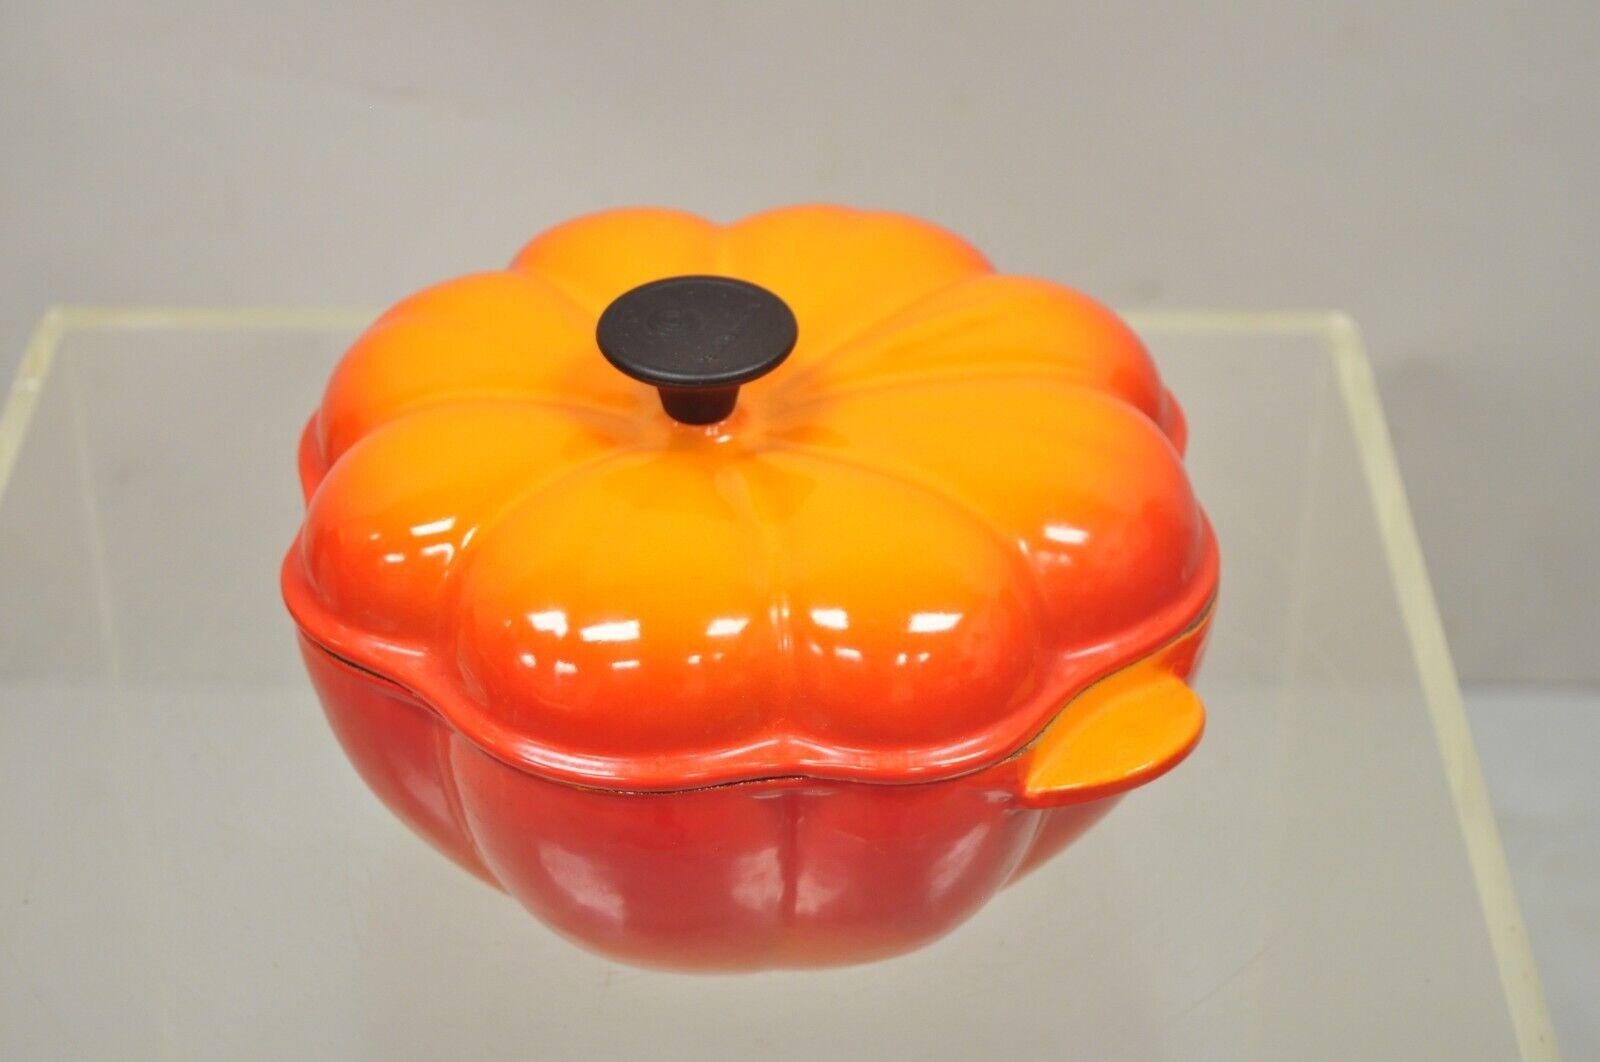 Le Creuset France orange cast iron 2 qt Dutch oven pumpkin shape pot. Circa late 20th century. Measurements: 6